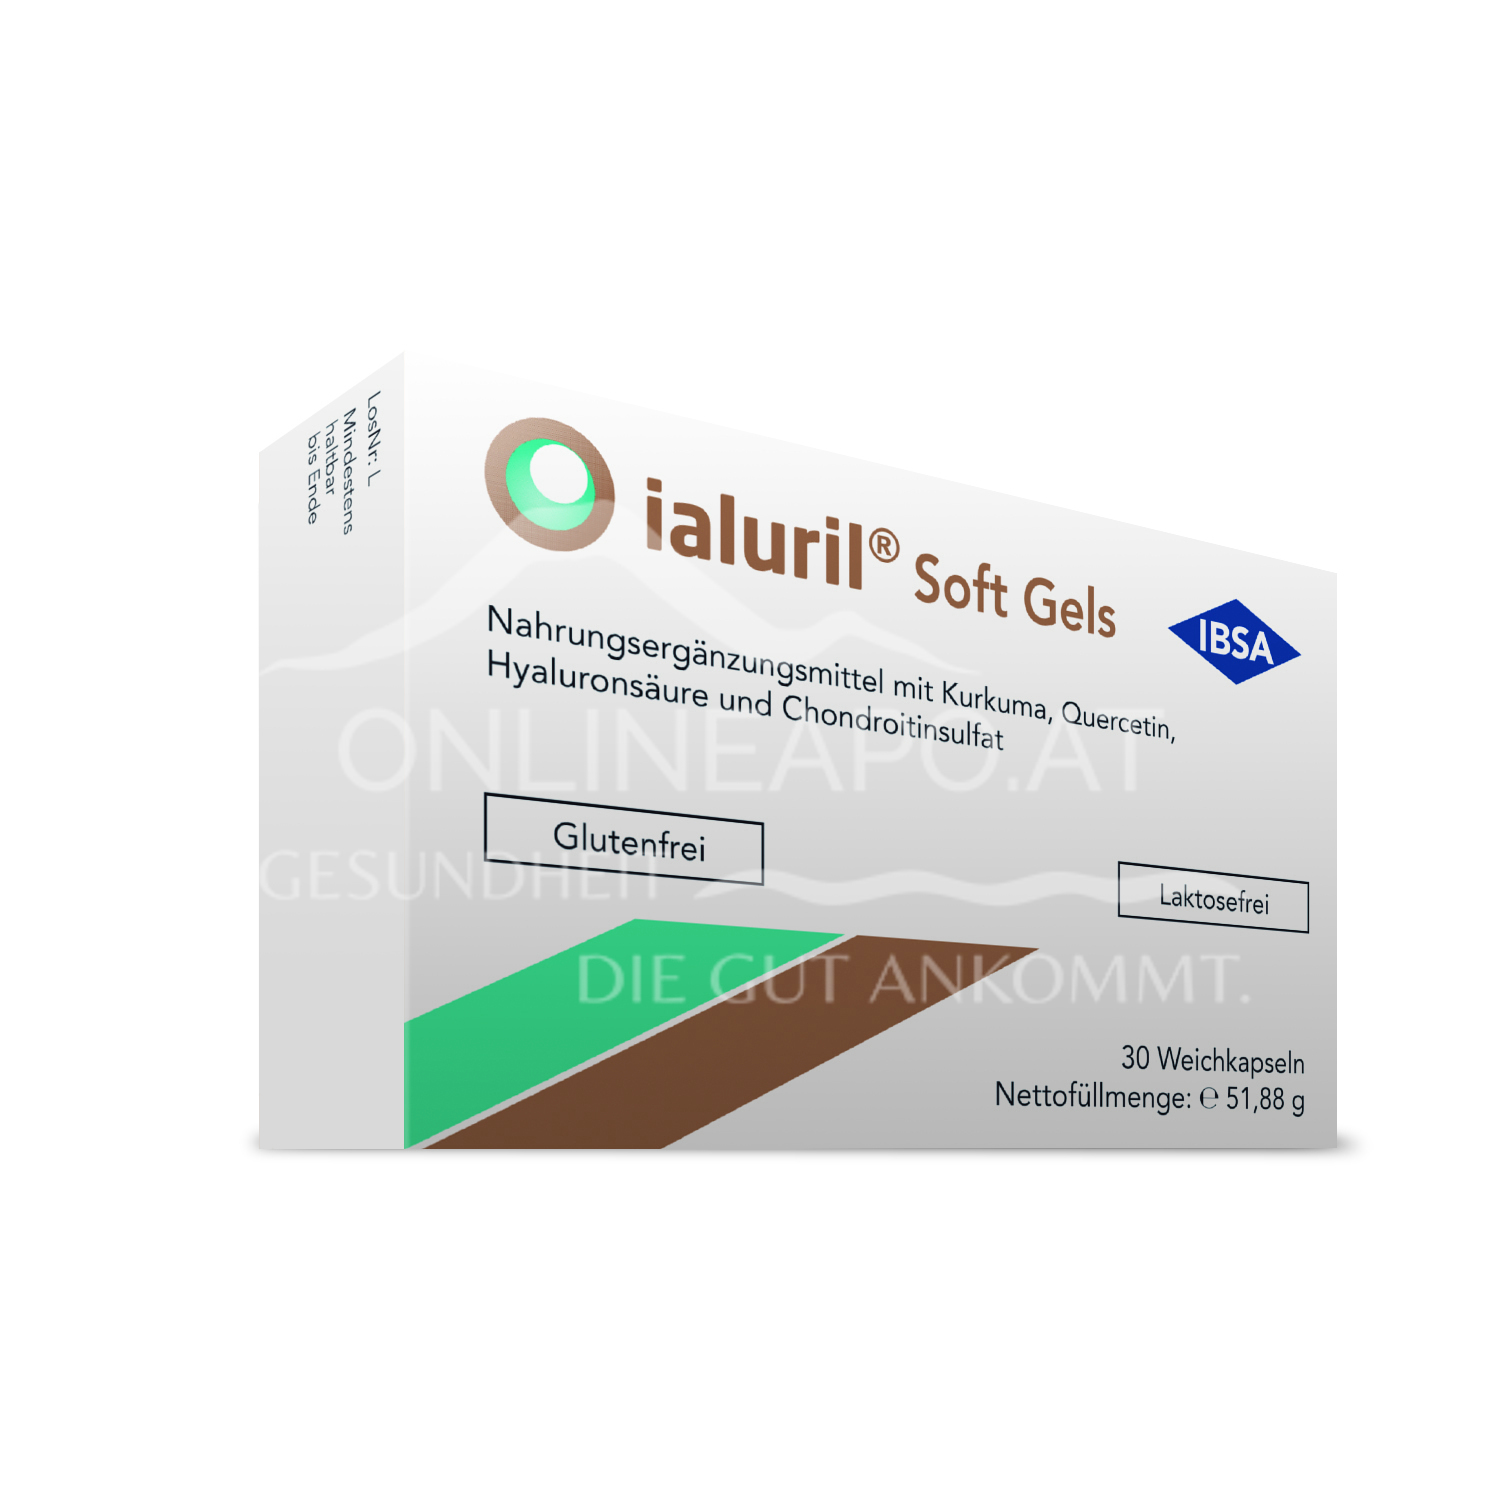 ialuril® Soft Gels Weichkapseln